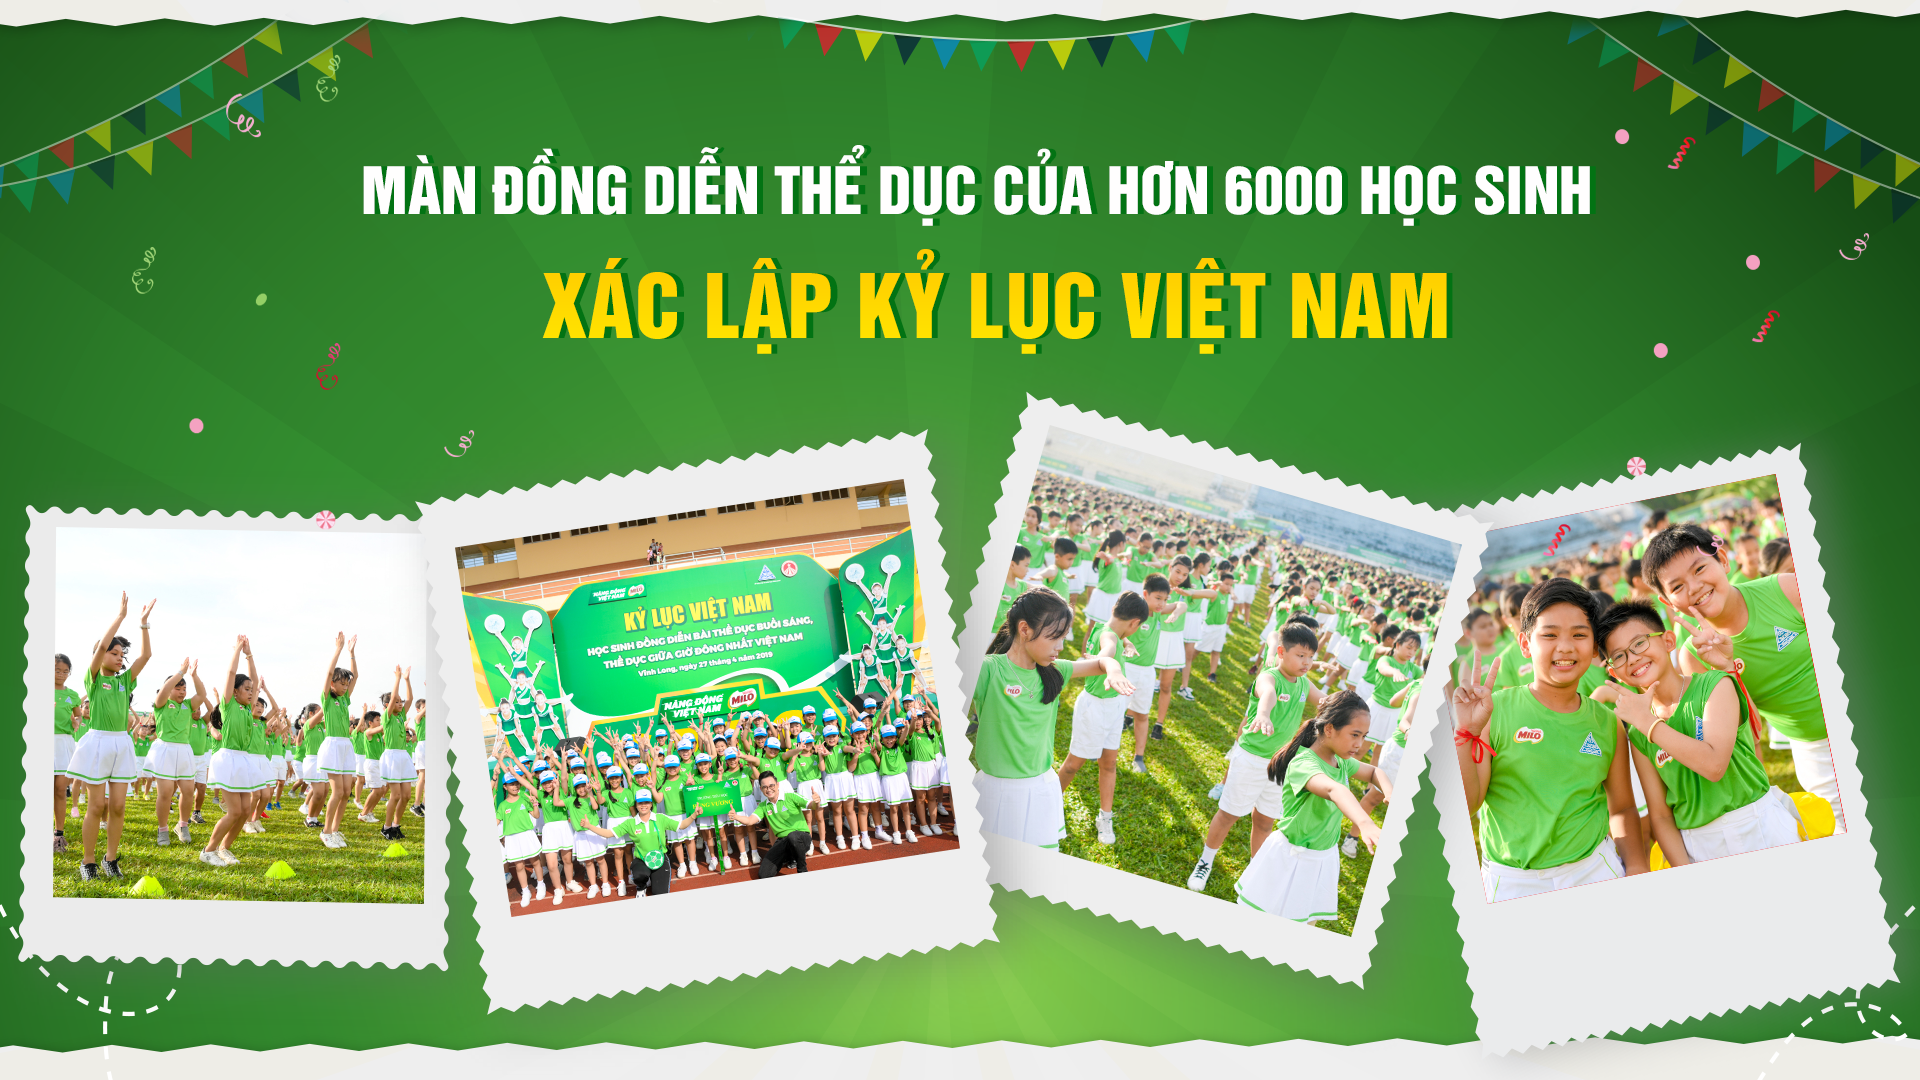 Màn đồng diễn thể dục của hơn 6000 học sinh xác lập kỷ lục Việt Nam - 1